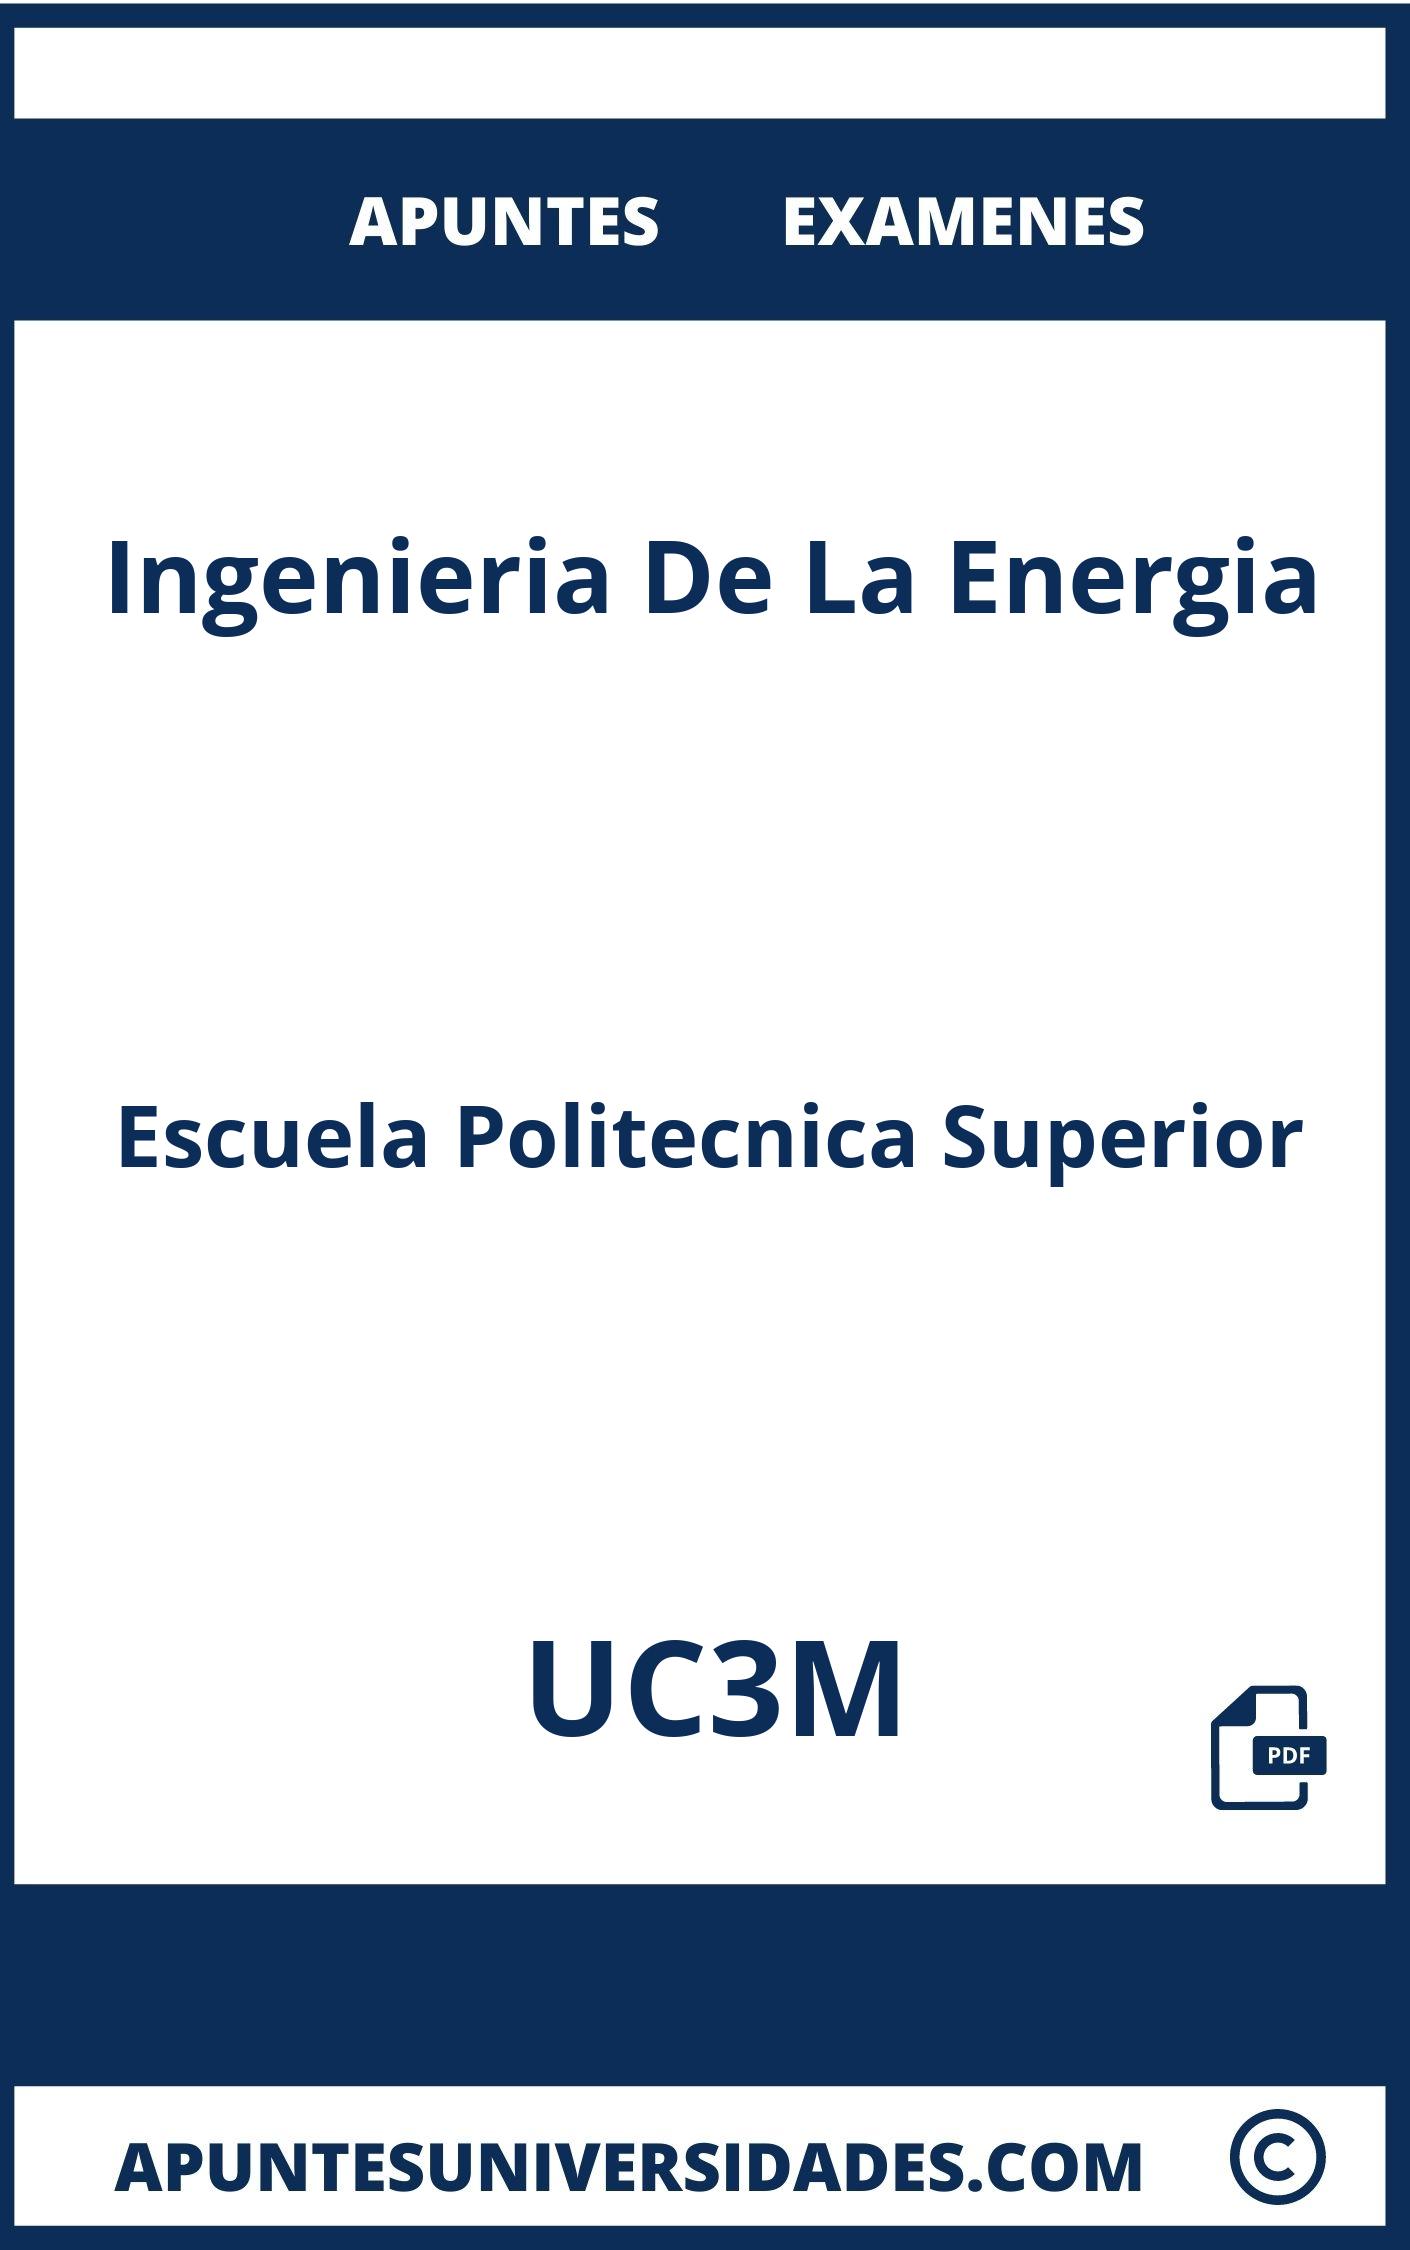 Examenes y Apuntes Ingenieria De La Energia UC3M